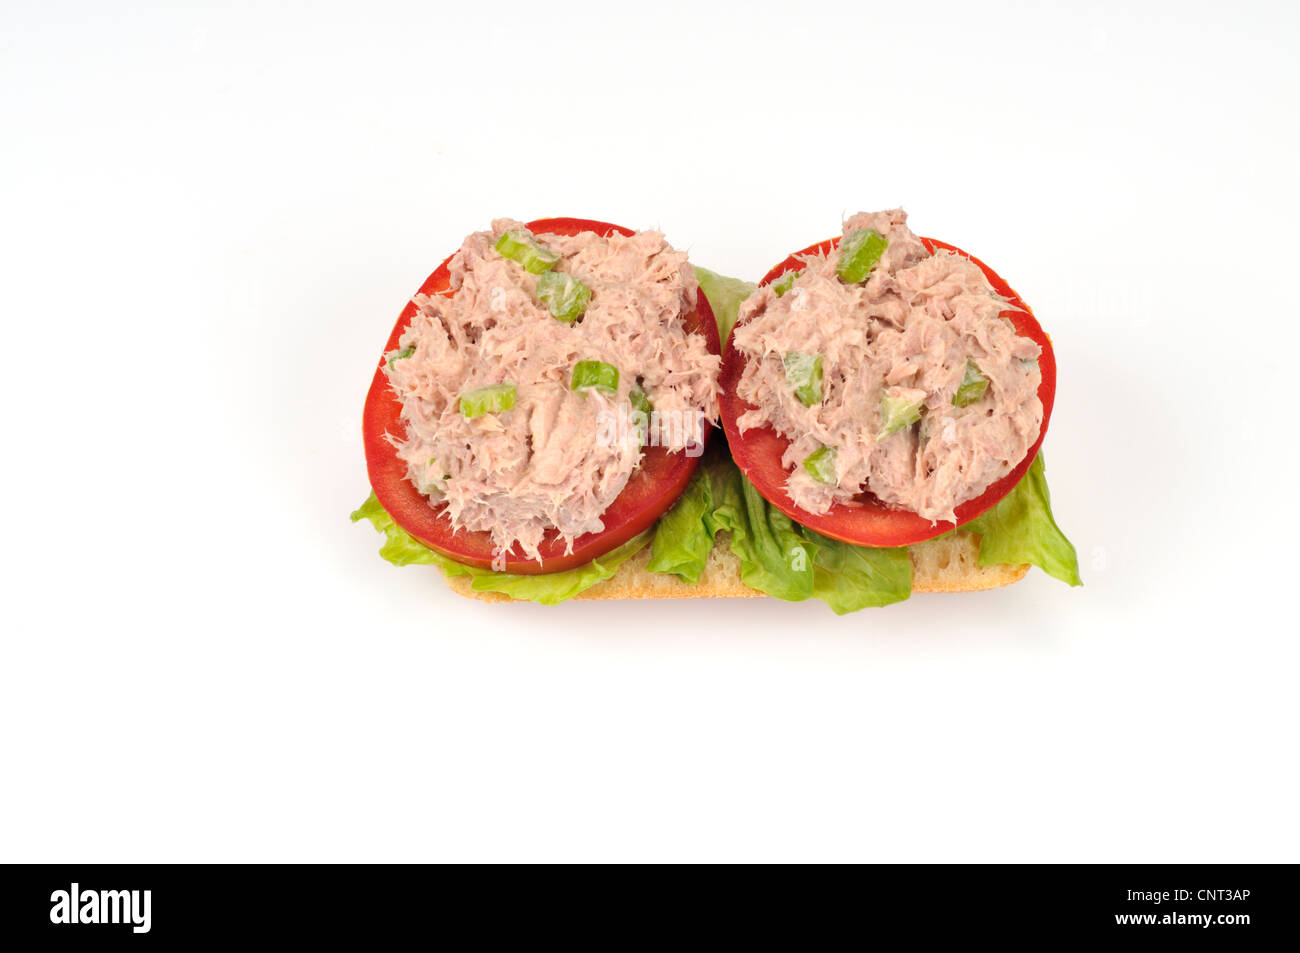 Sándwich de ensalada de atún sobre lechuga y tomate Foto de stock